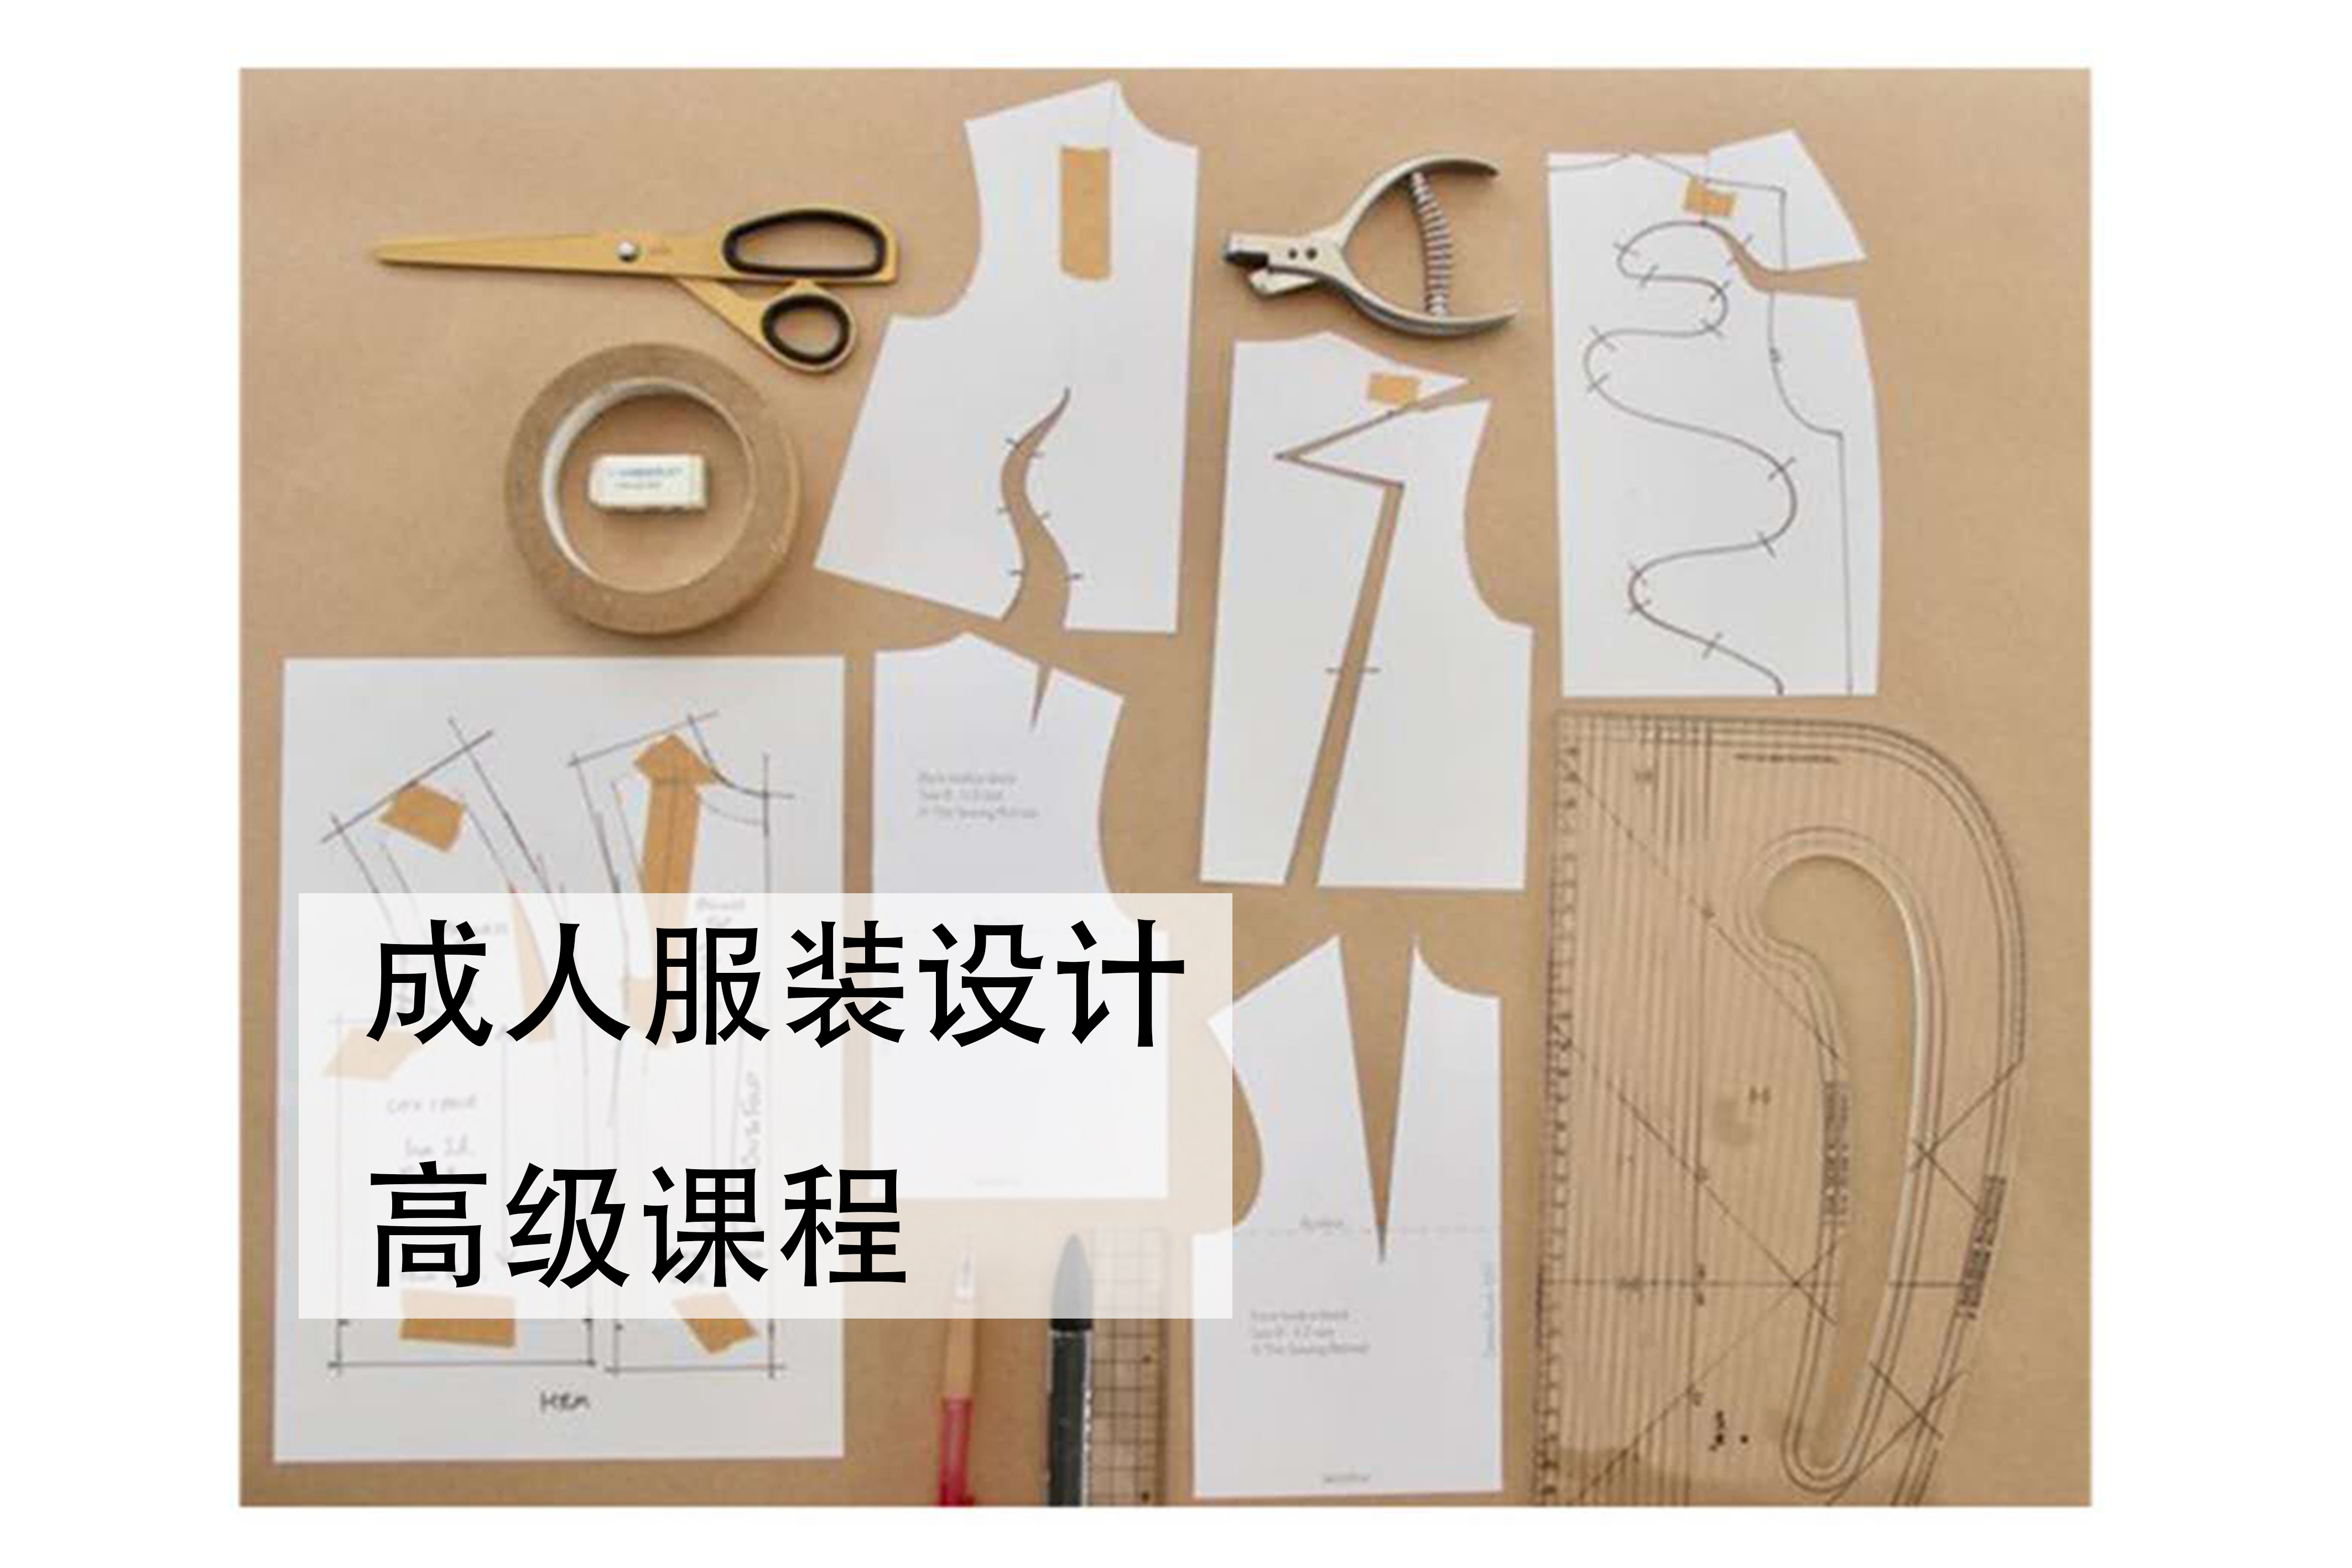 深圳成人服装设计高级课程